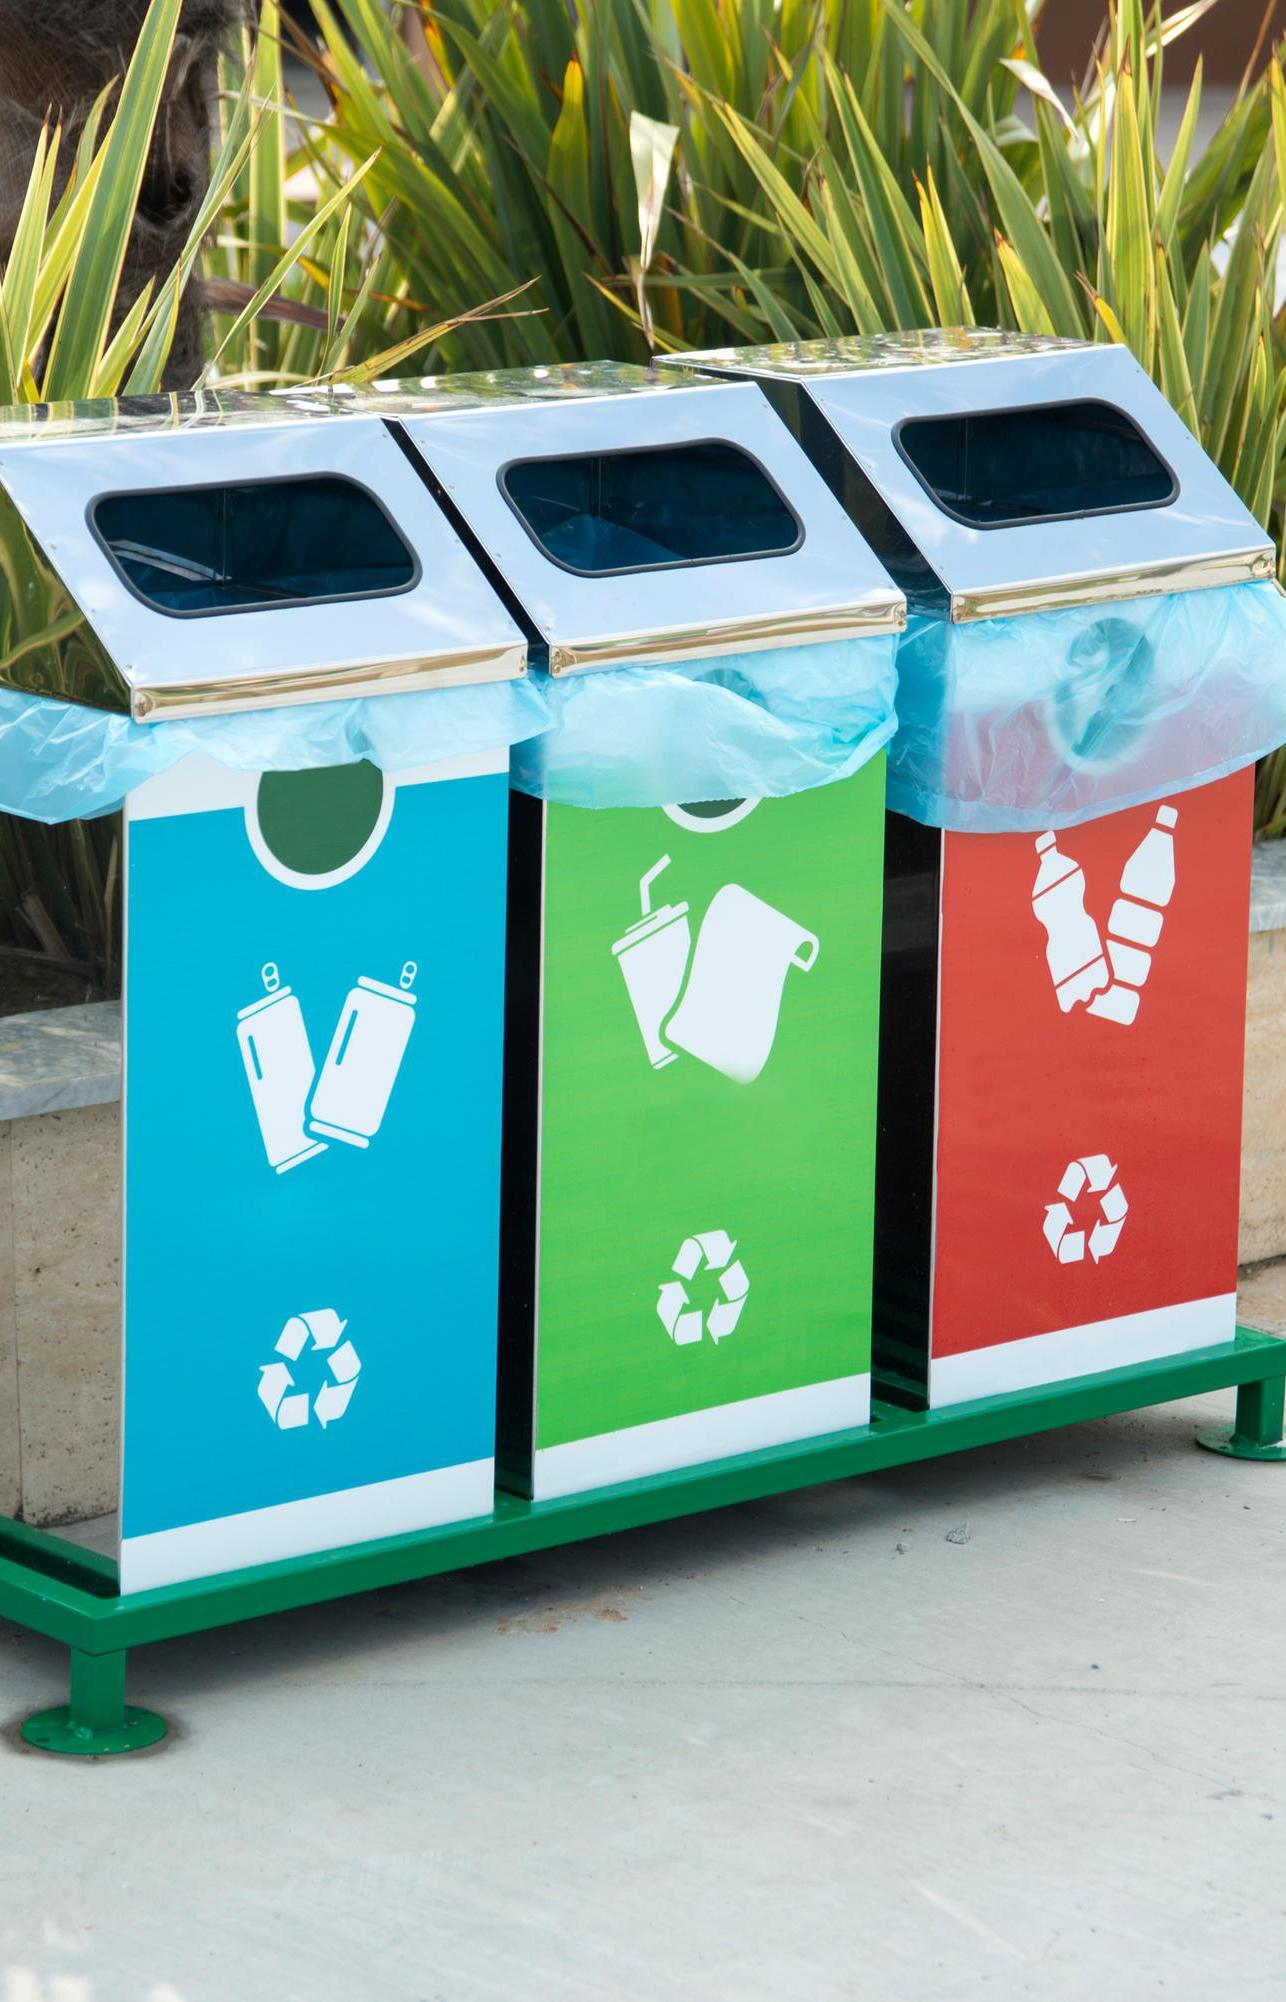 На экопразднике можно будет обменяться одеждой и научиться разделять мусор 